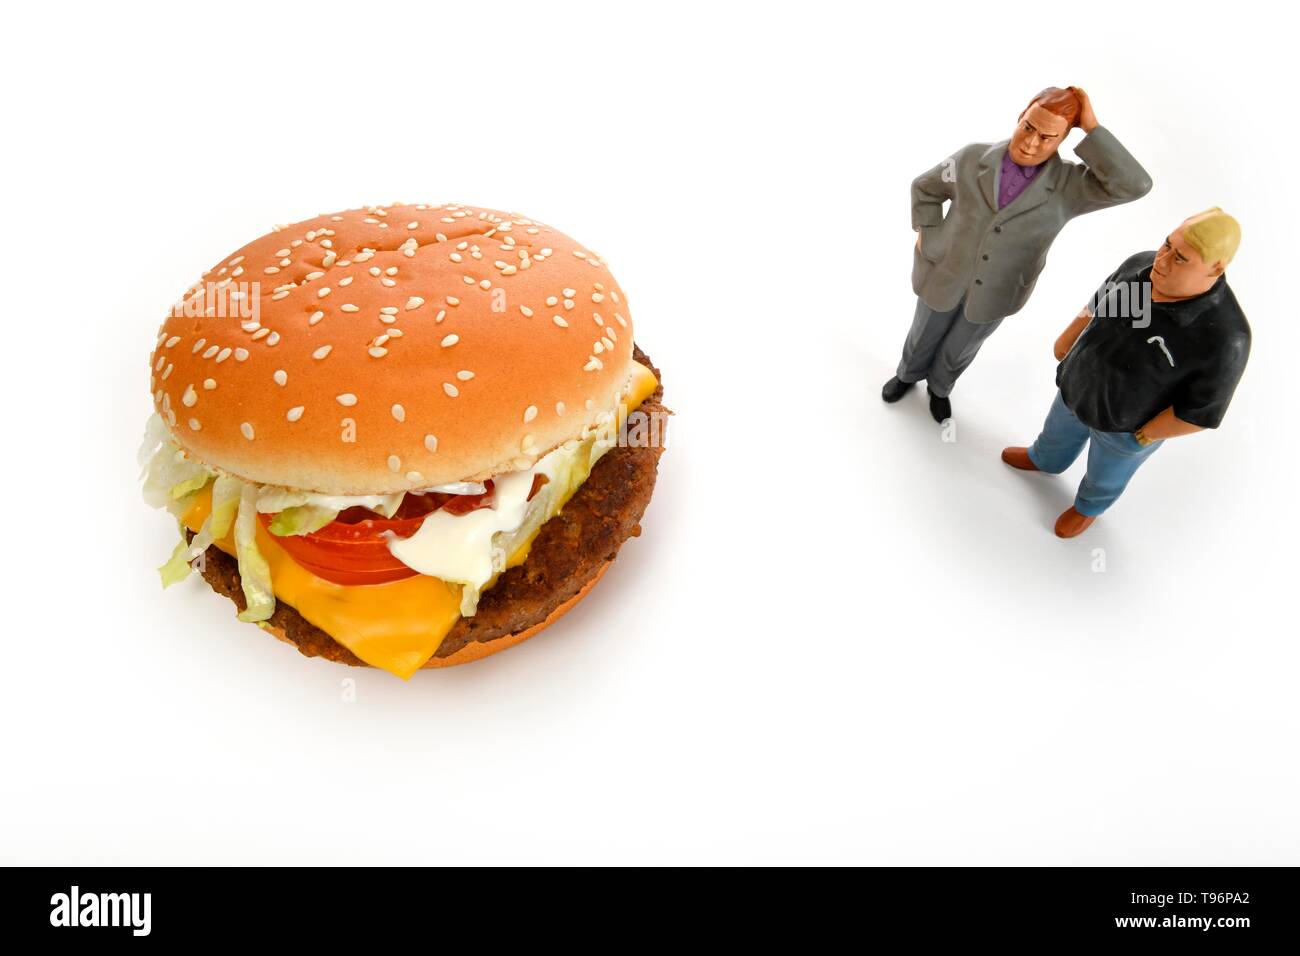 Photo symbole de poids, une mauvaise alimentation, des chiffres en face de cheeseburger, Allemagne Banque D'Images